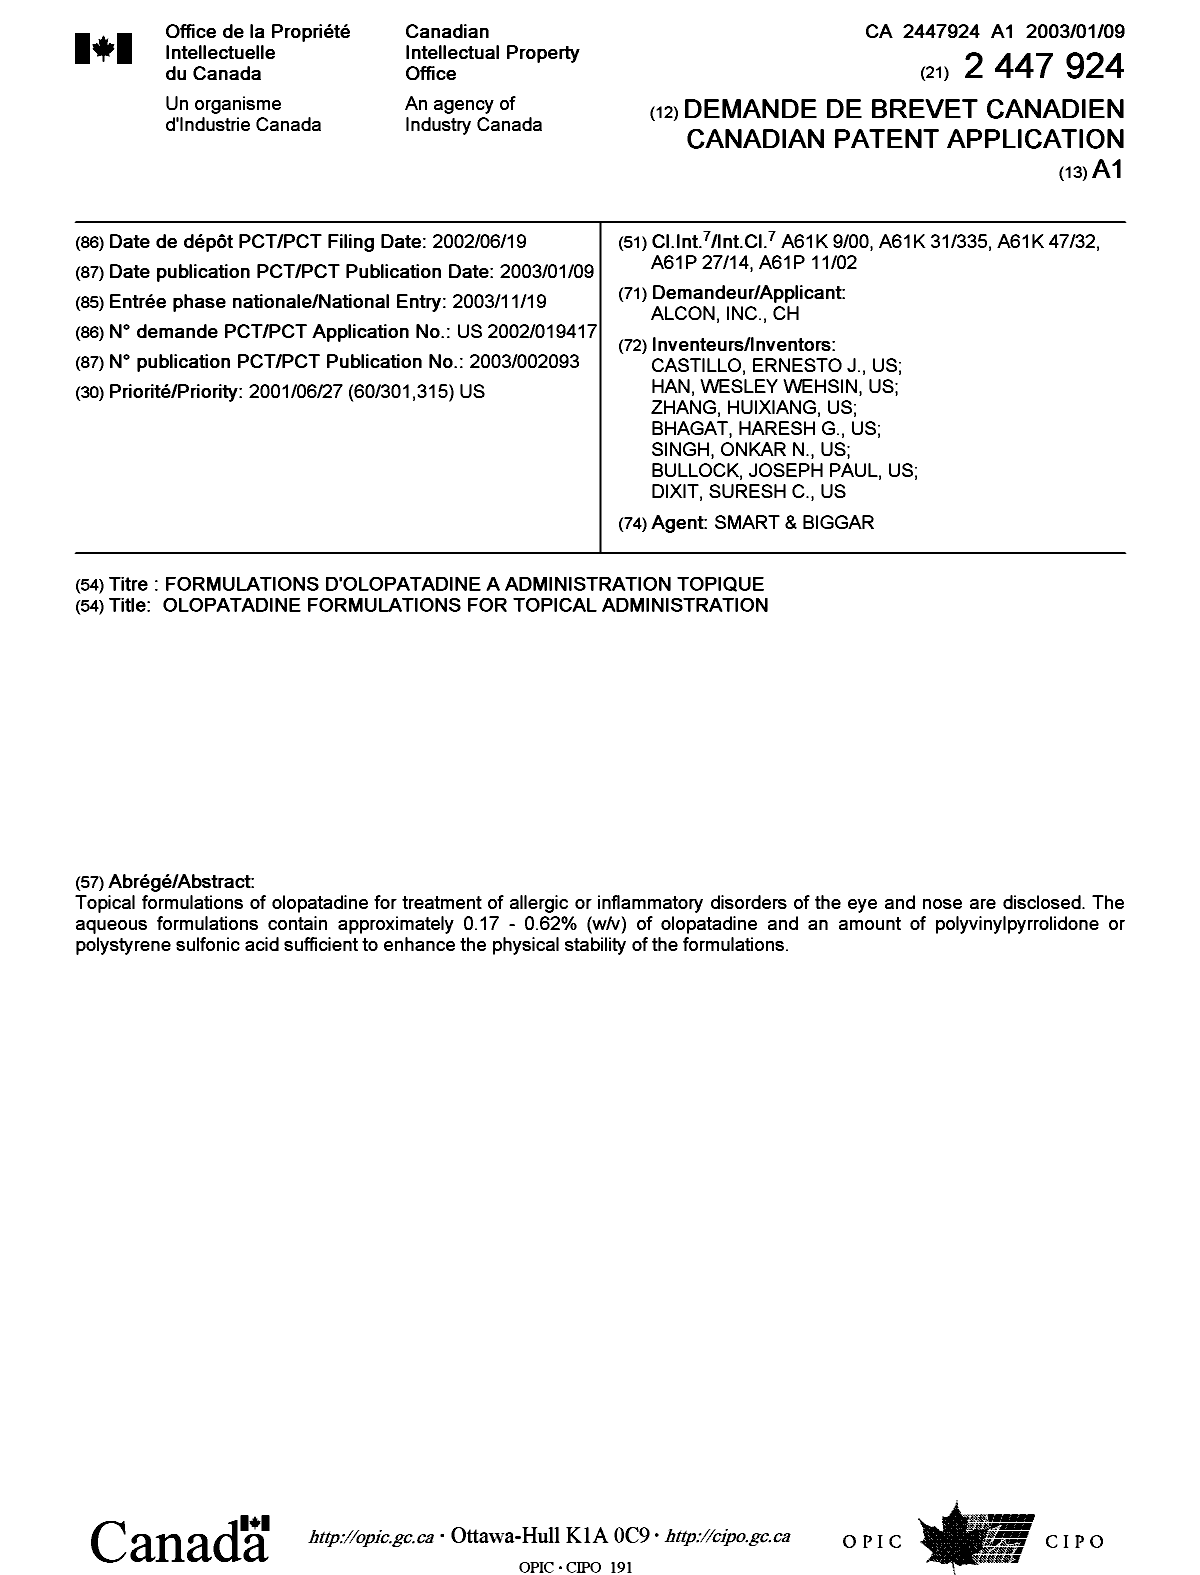 Document de brevet canadien 2447924. Page couverture 20031202. Image 1 de 1